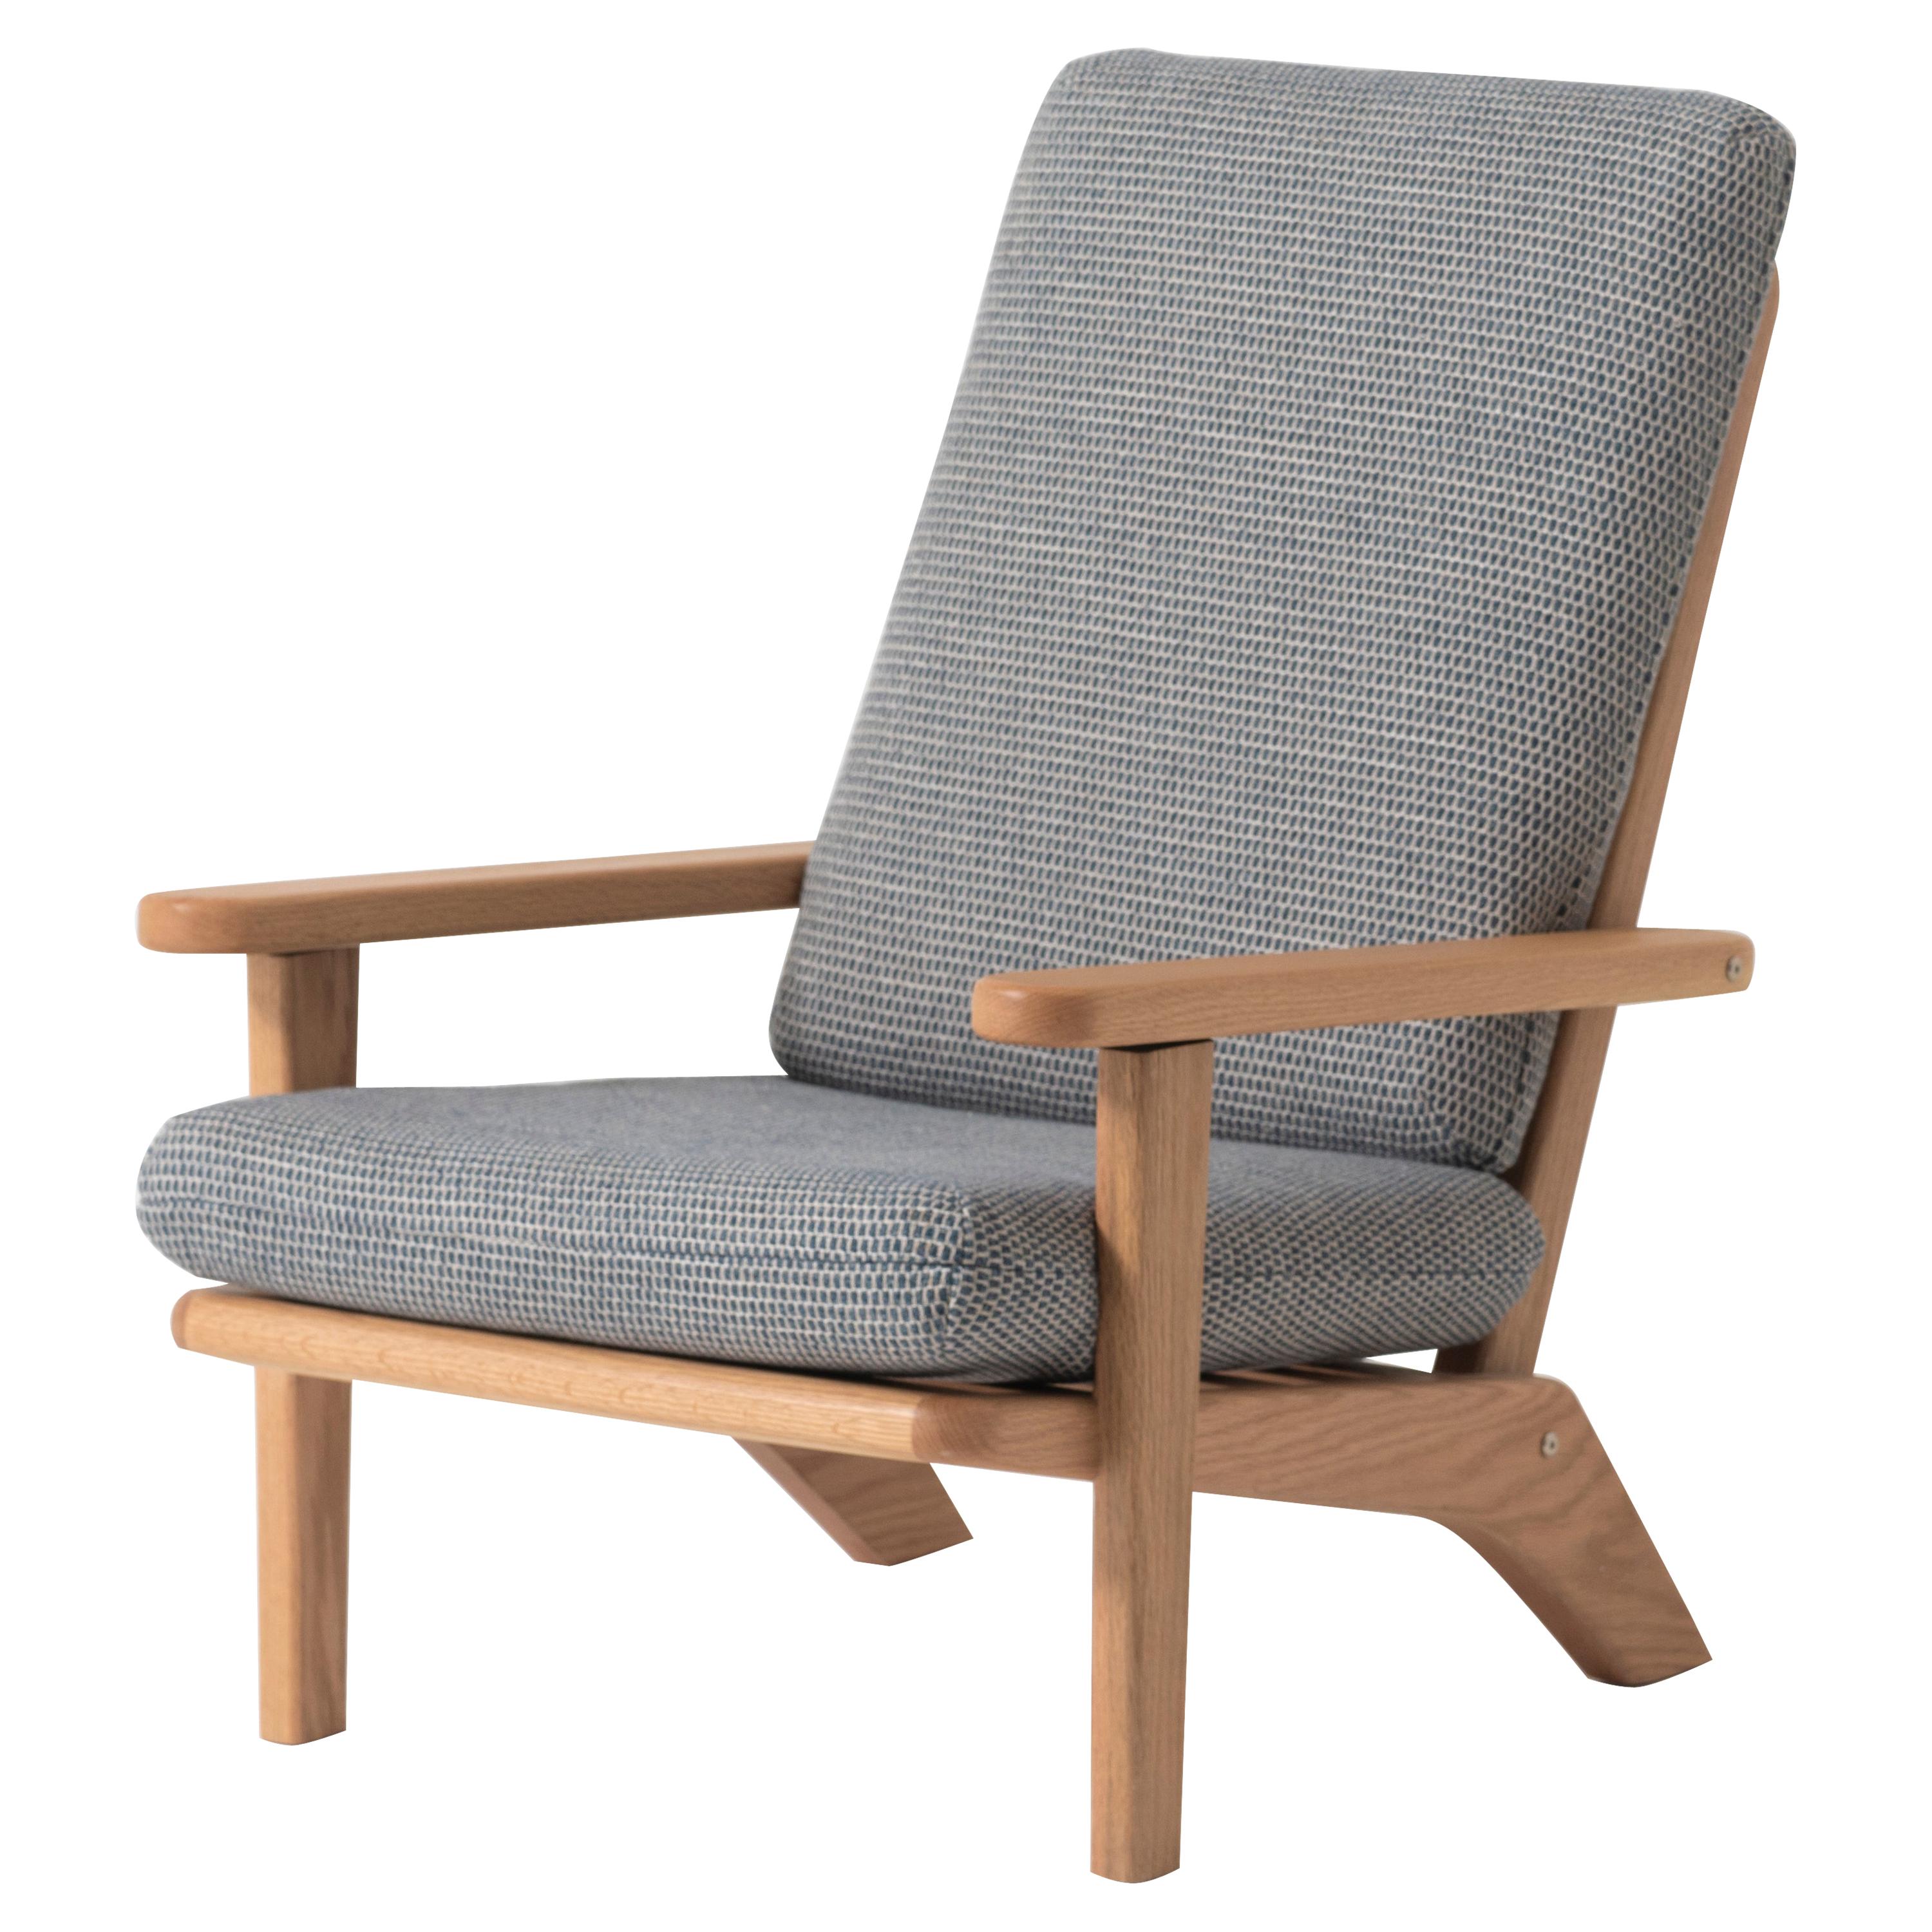 Chaise longue en bois de chêne massif avec coussin en textile gris et dossier inclinable en vente